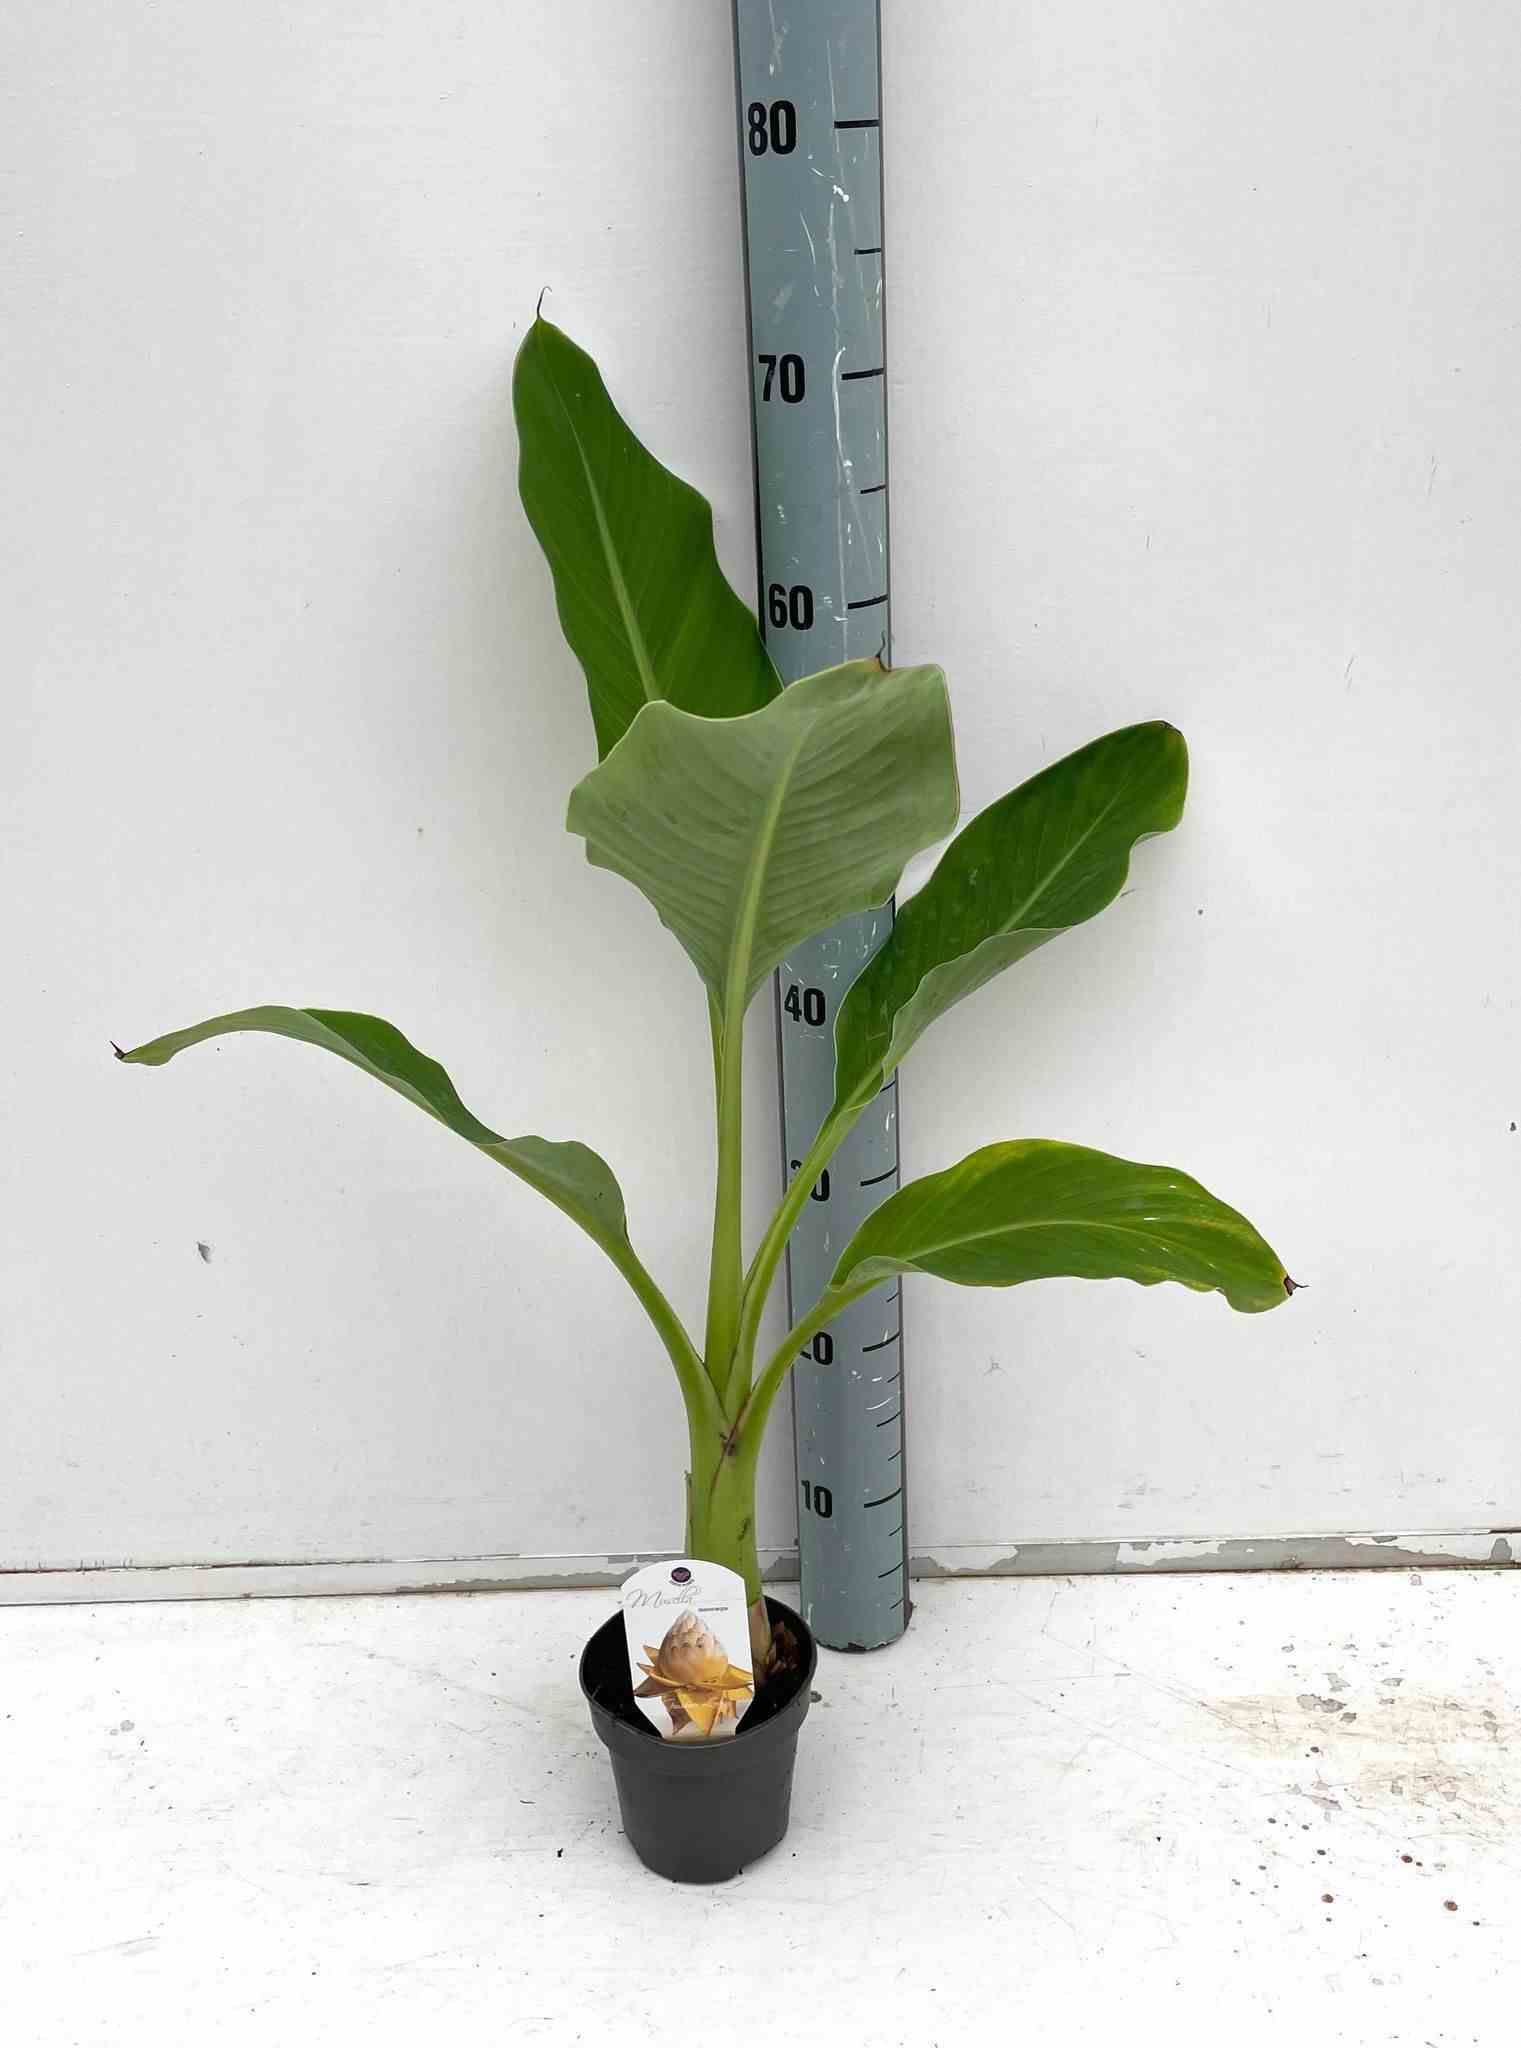 Musella lasiocarpa (bananier lotus d'or)   jaune - taille pot de 14 litres - 100/120 cm